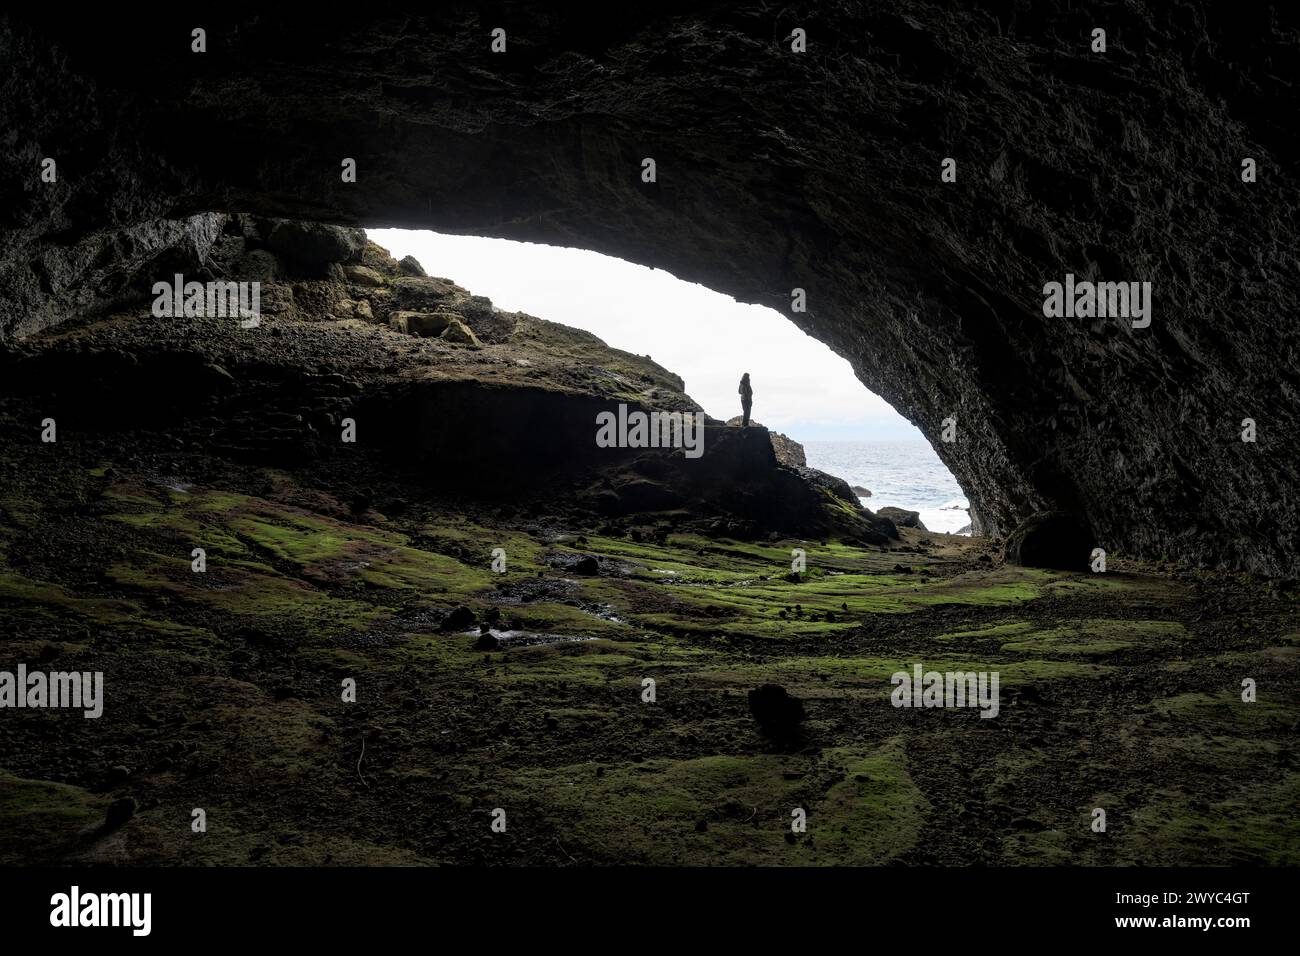 Eine Person steht an der Mündung einer großen Meereshöhle, mit einer Silhouette vor dem hellen Himmel und der zerklüfteten Küste Stockfoto